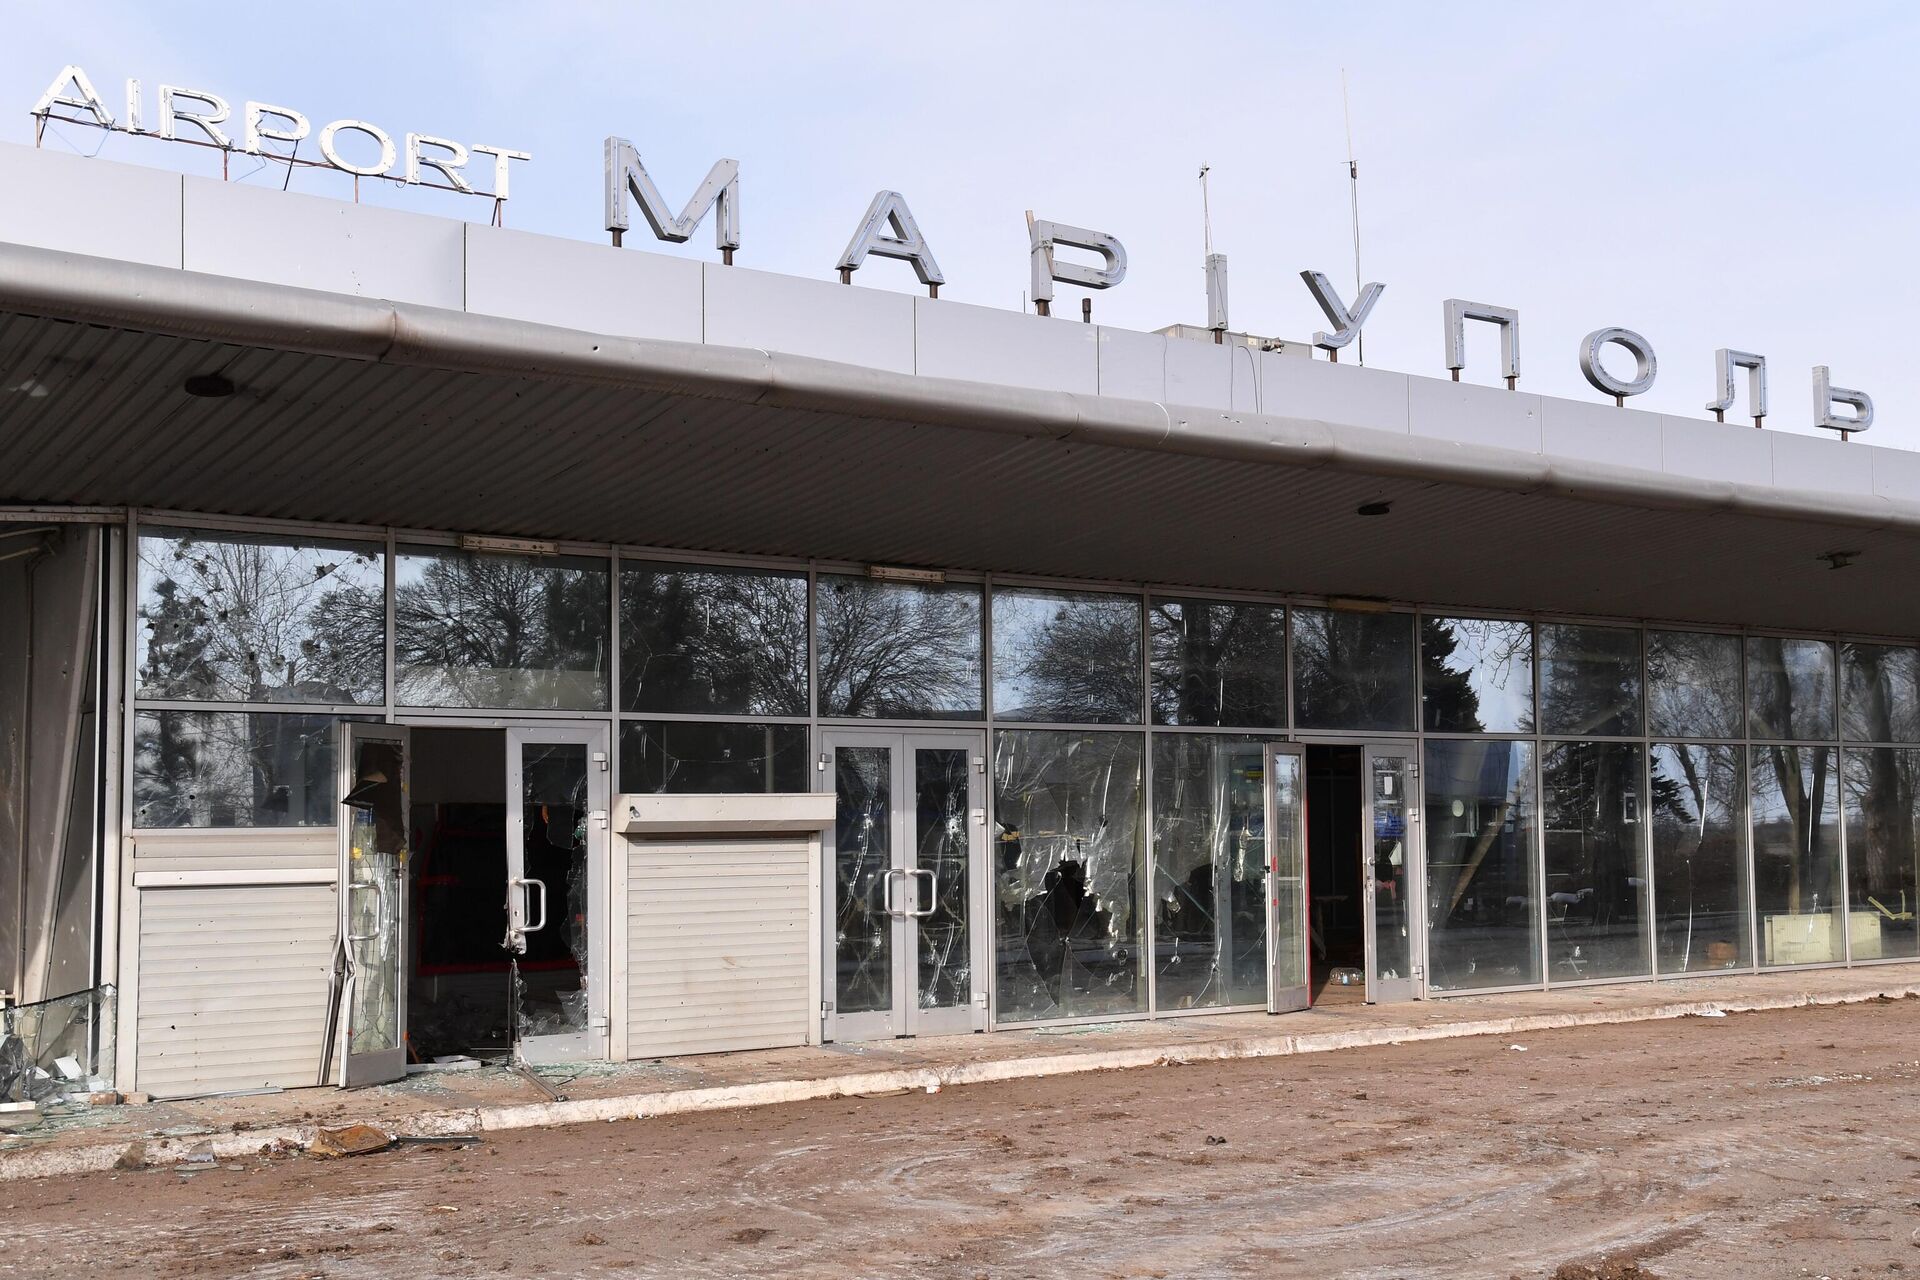 Здание терминала аэропорта Мариуполя, освобожденного бойцами Народной милиции ДНР и российскими военнослужащими, 25 марта 2022 года  - Sputnik Латвия, 1920, 28.03.2022